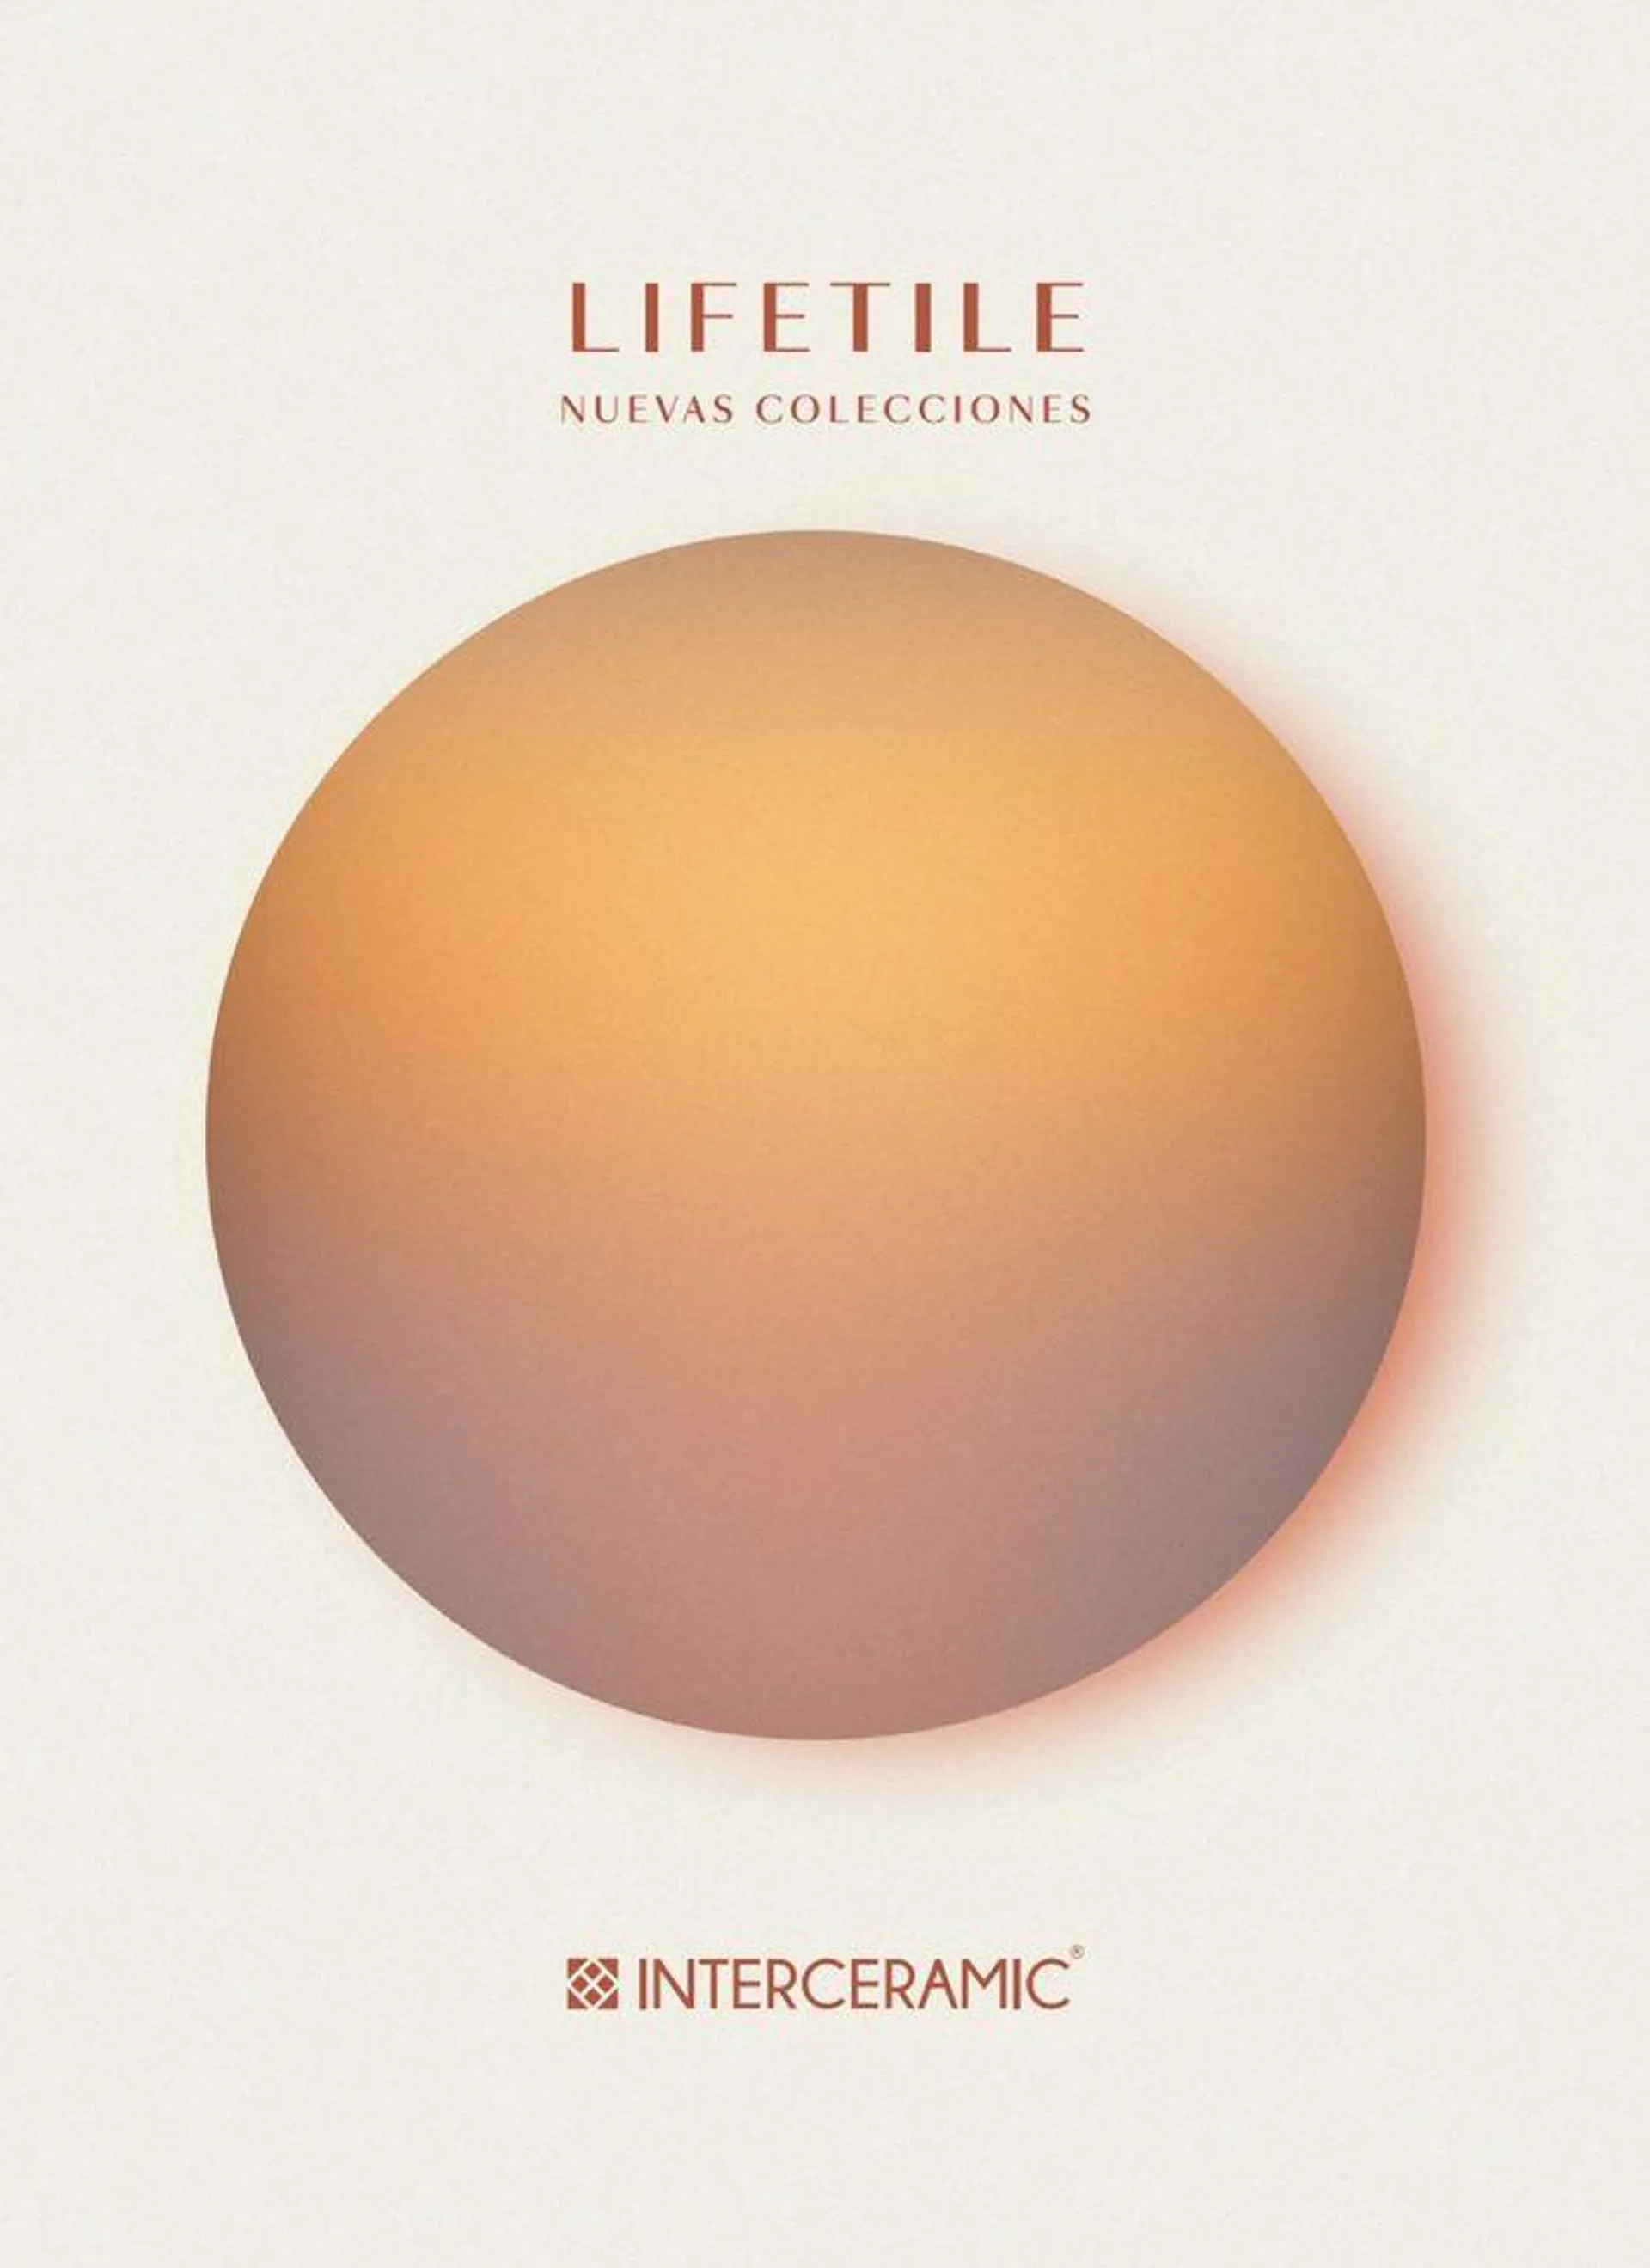 Lifetile Nuevas Colecciones - 1